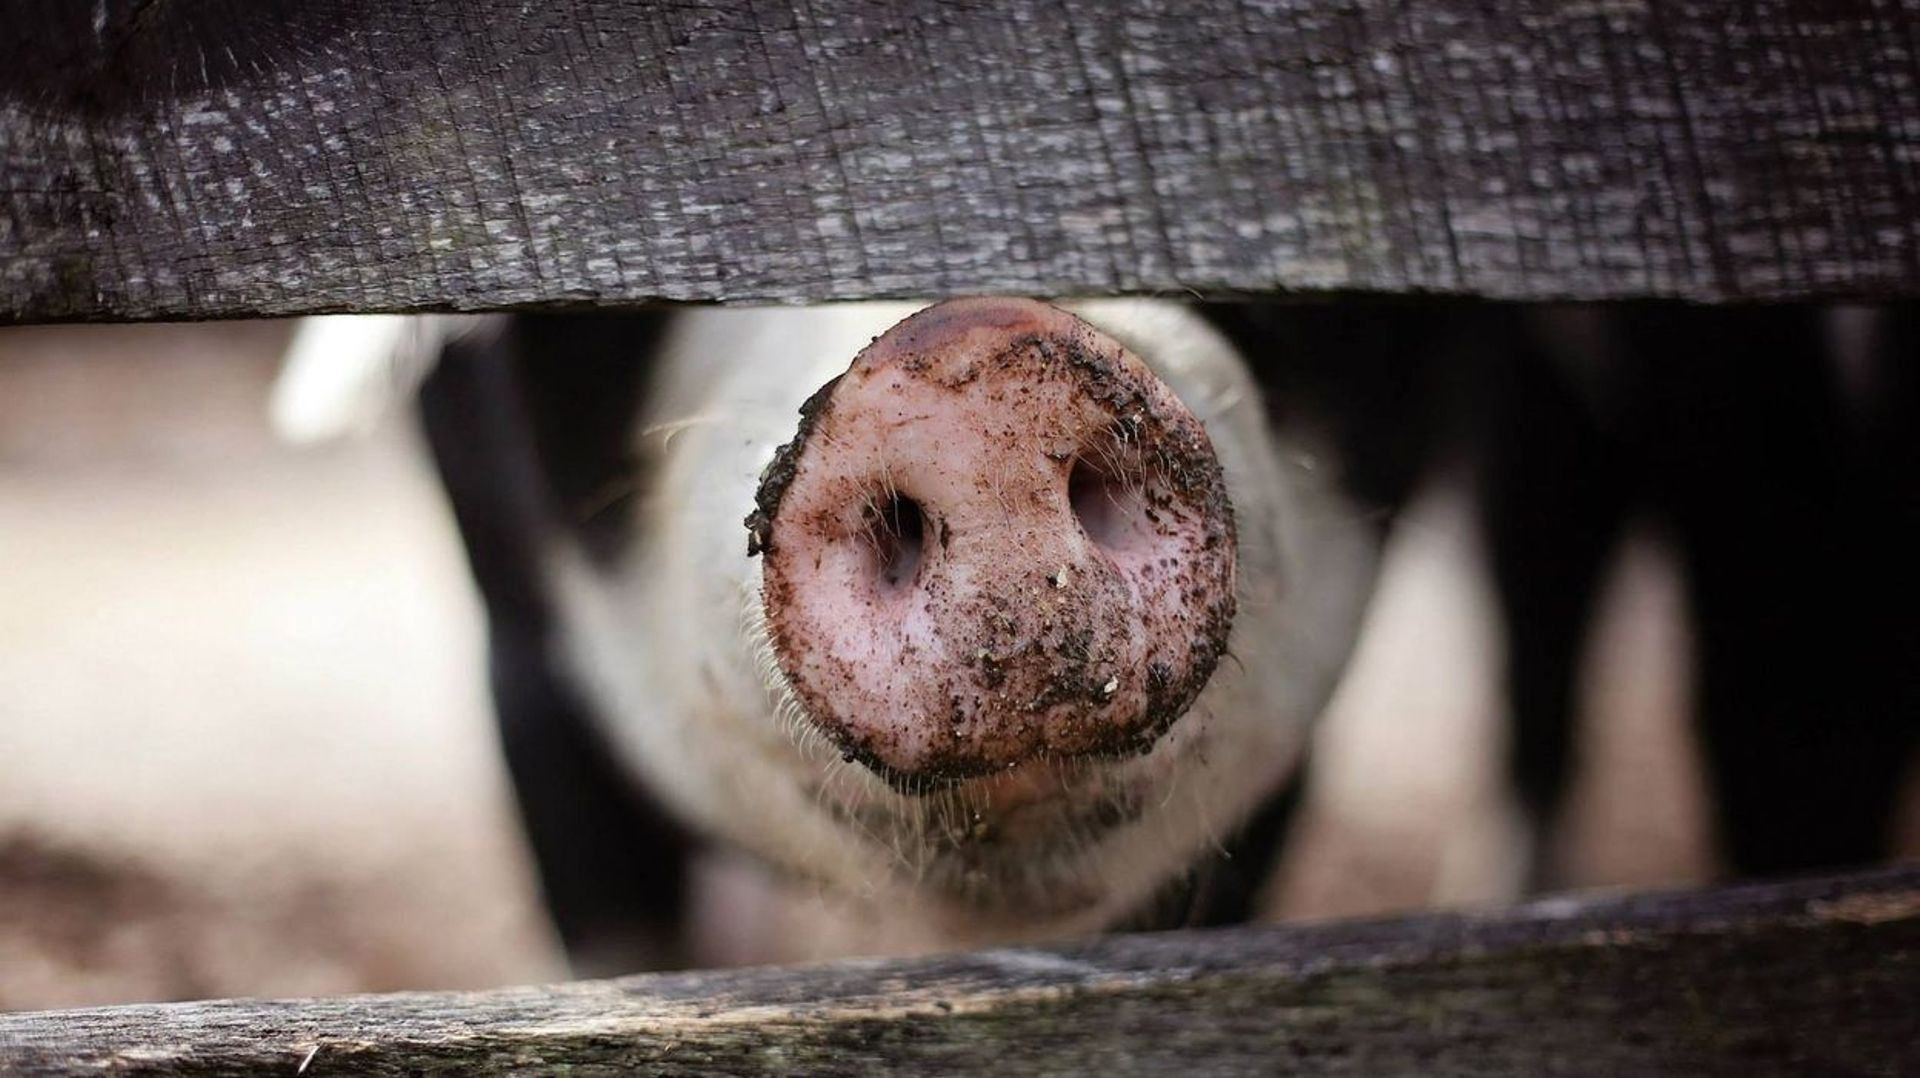 Peste porcine: six pays suspendent leurs importations de porc belge